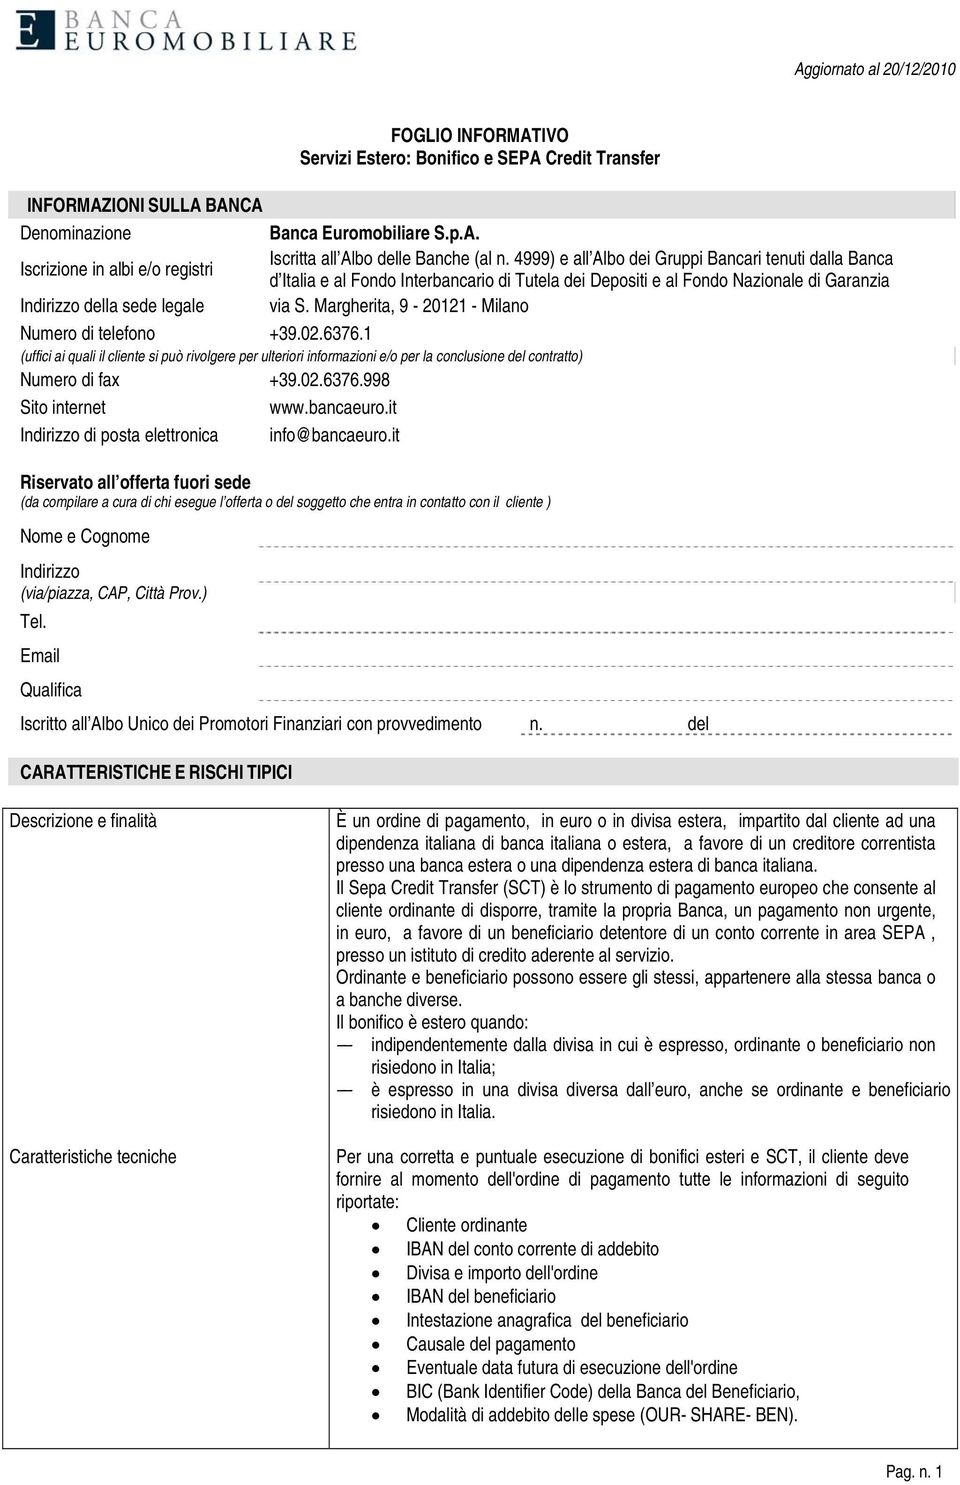 Margherita, 9-20121 - Milano Numero di telefono +39.02.6376.1 (uffici ai quali il cliente si può rivolgere per ulteriori informazioni e/o per la conclusione del contratto) Numero di fax +39.02.6376.998 Sito internet www.